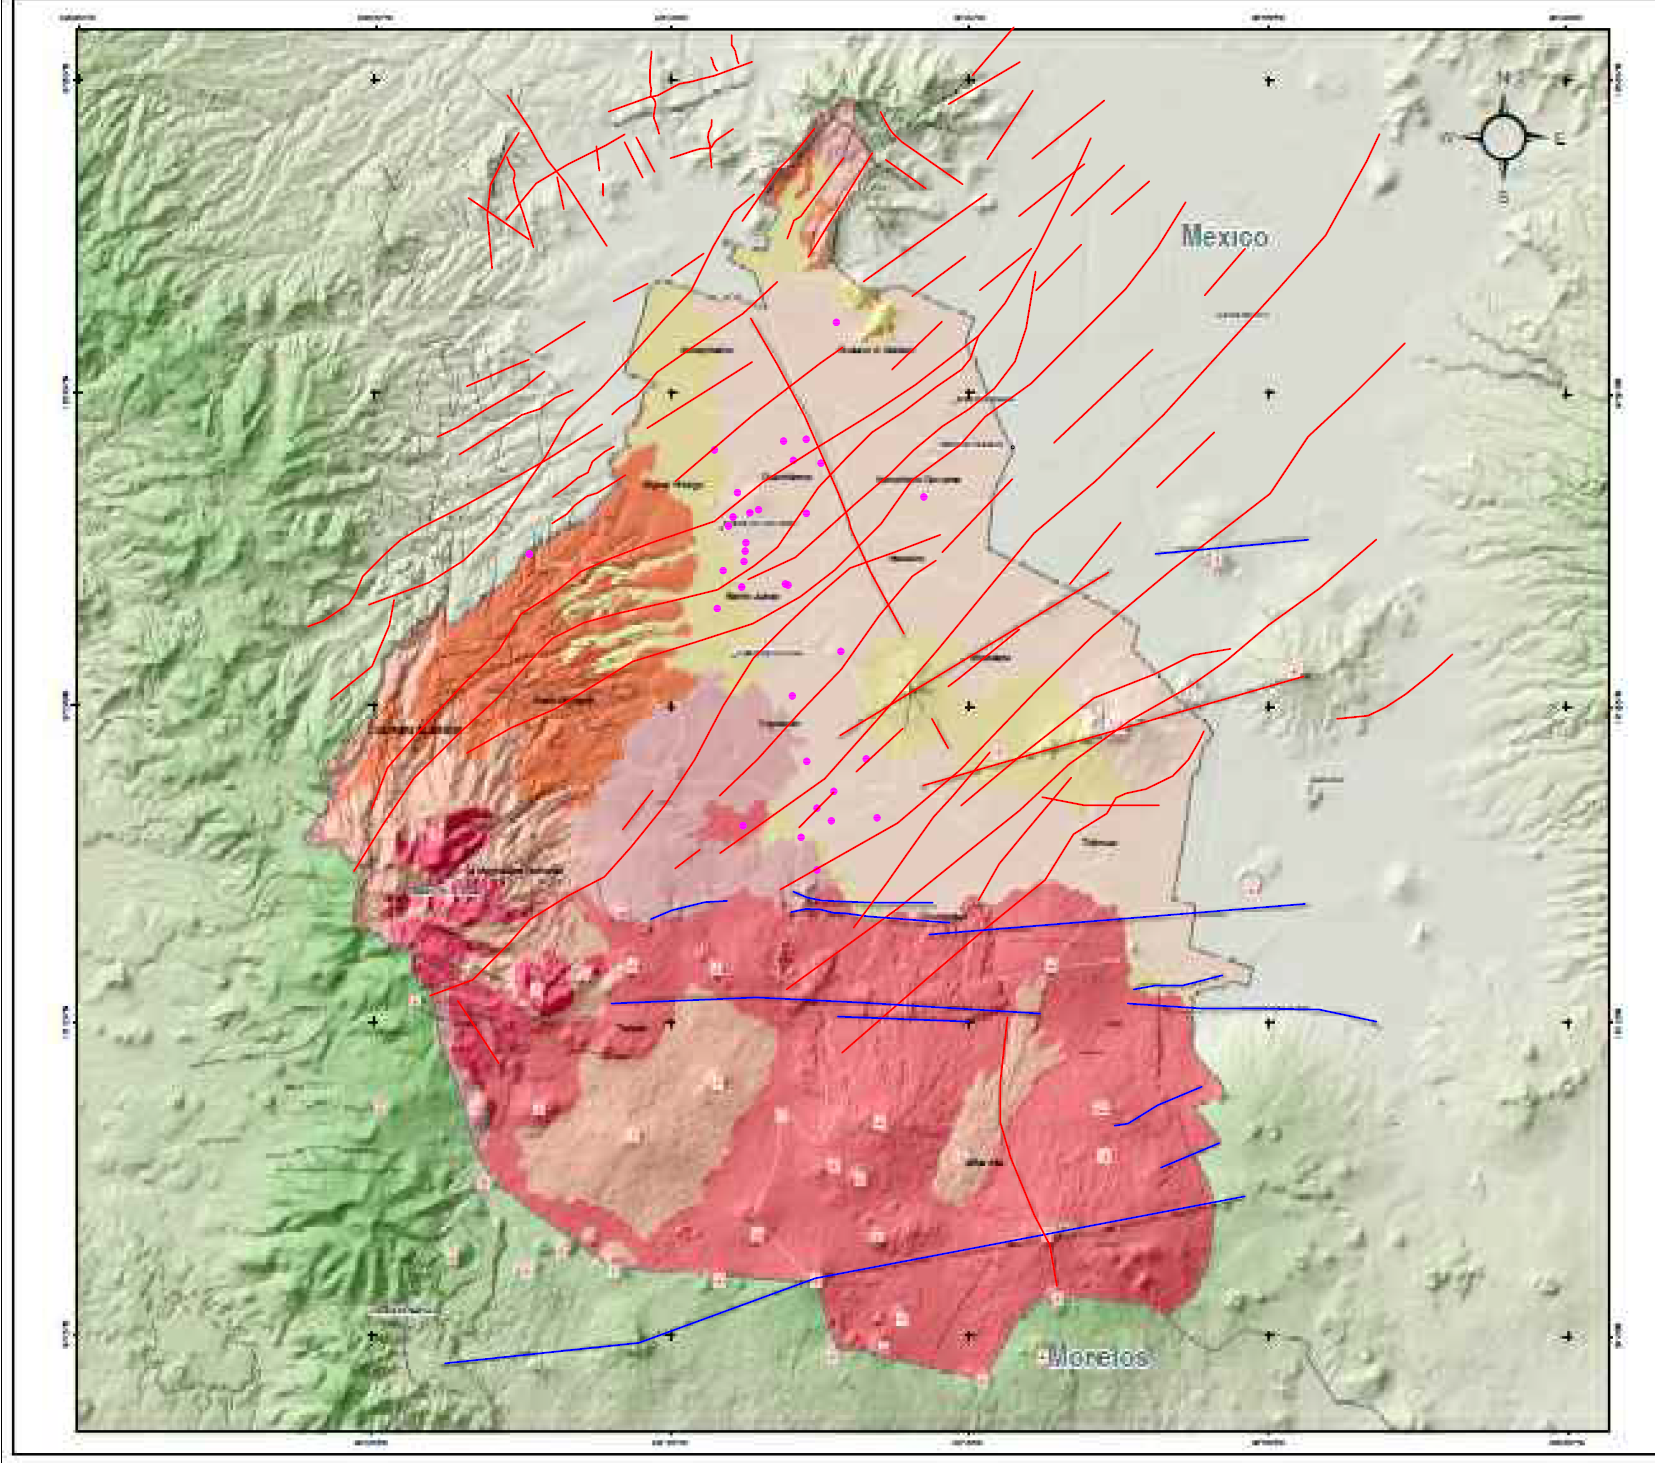 Las fallas geológicas, fenómenos naturales predecibles: Centro de Geociencias de la UNAM campus Juriquilla